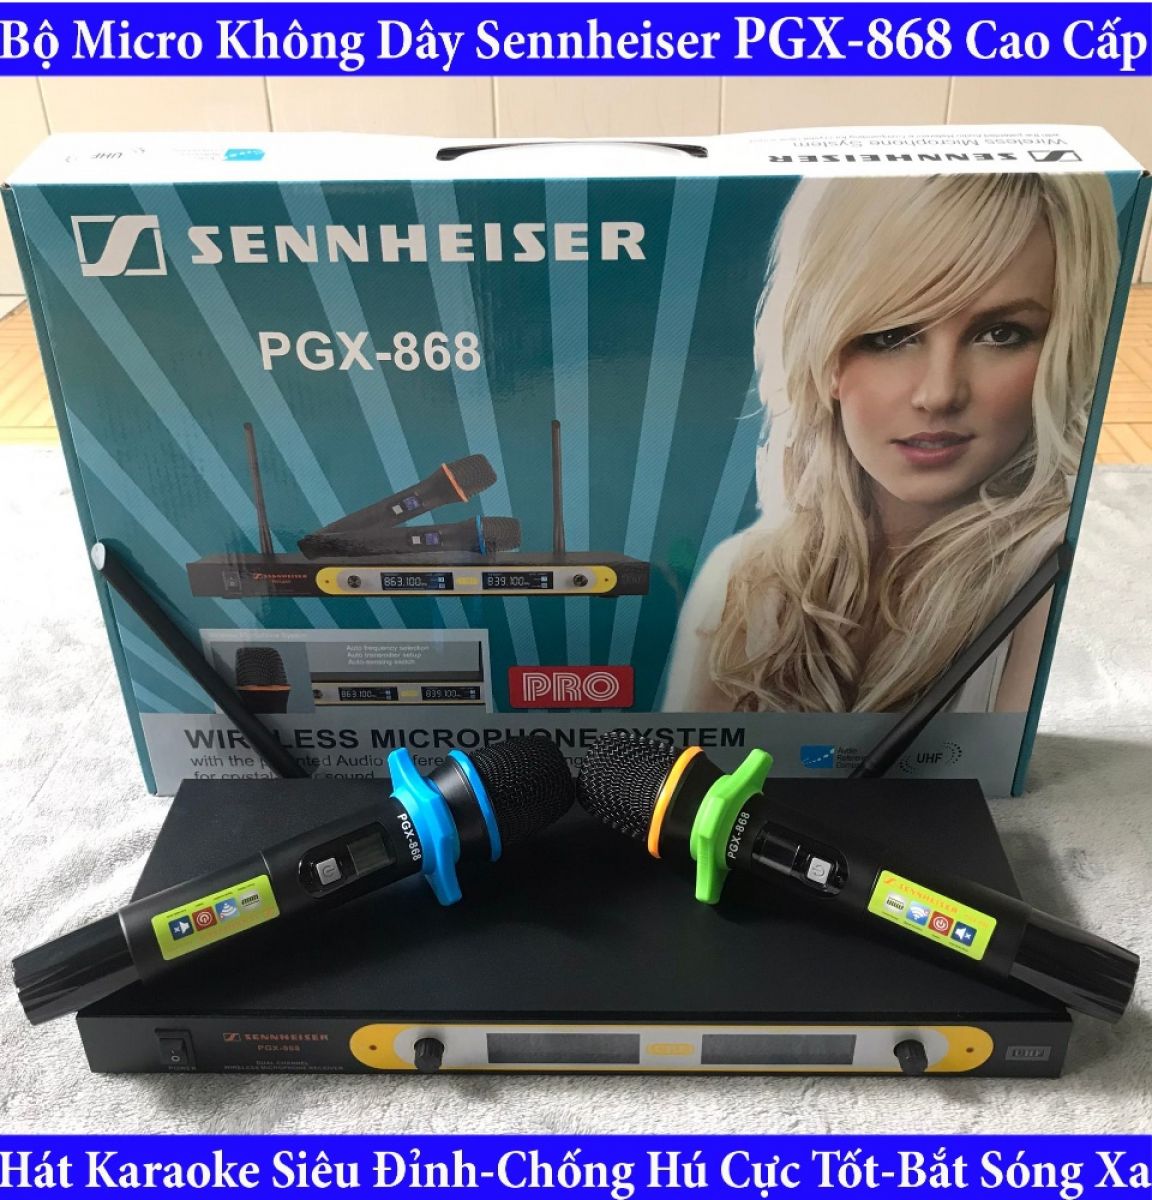 Micro không dây Sennheiser PGX-868 - Mic karaoke gia đình, sân khấu - Độ nhạy cao, bắt sóng xa, chống hú rít - Thiết kế sang trọng, bắt mắt - Dễ dàng phối ghép với các thiết bị âm thanh khác (BẢO HÀNH 12 THÁNG)